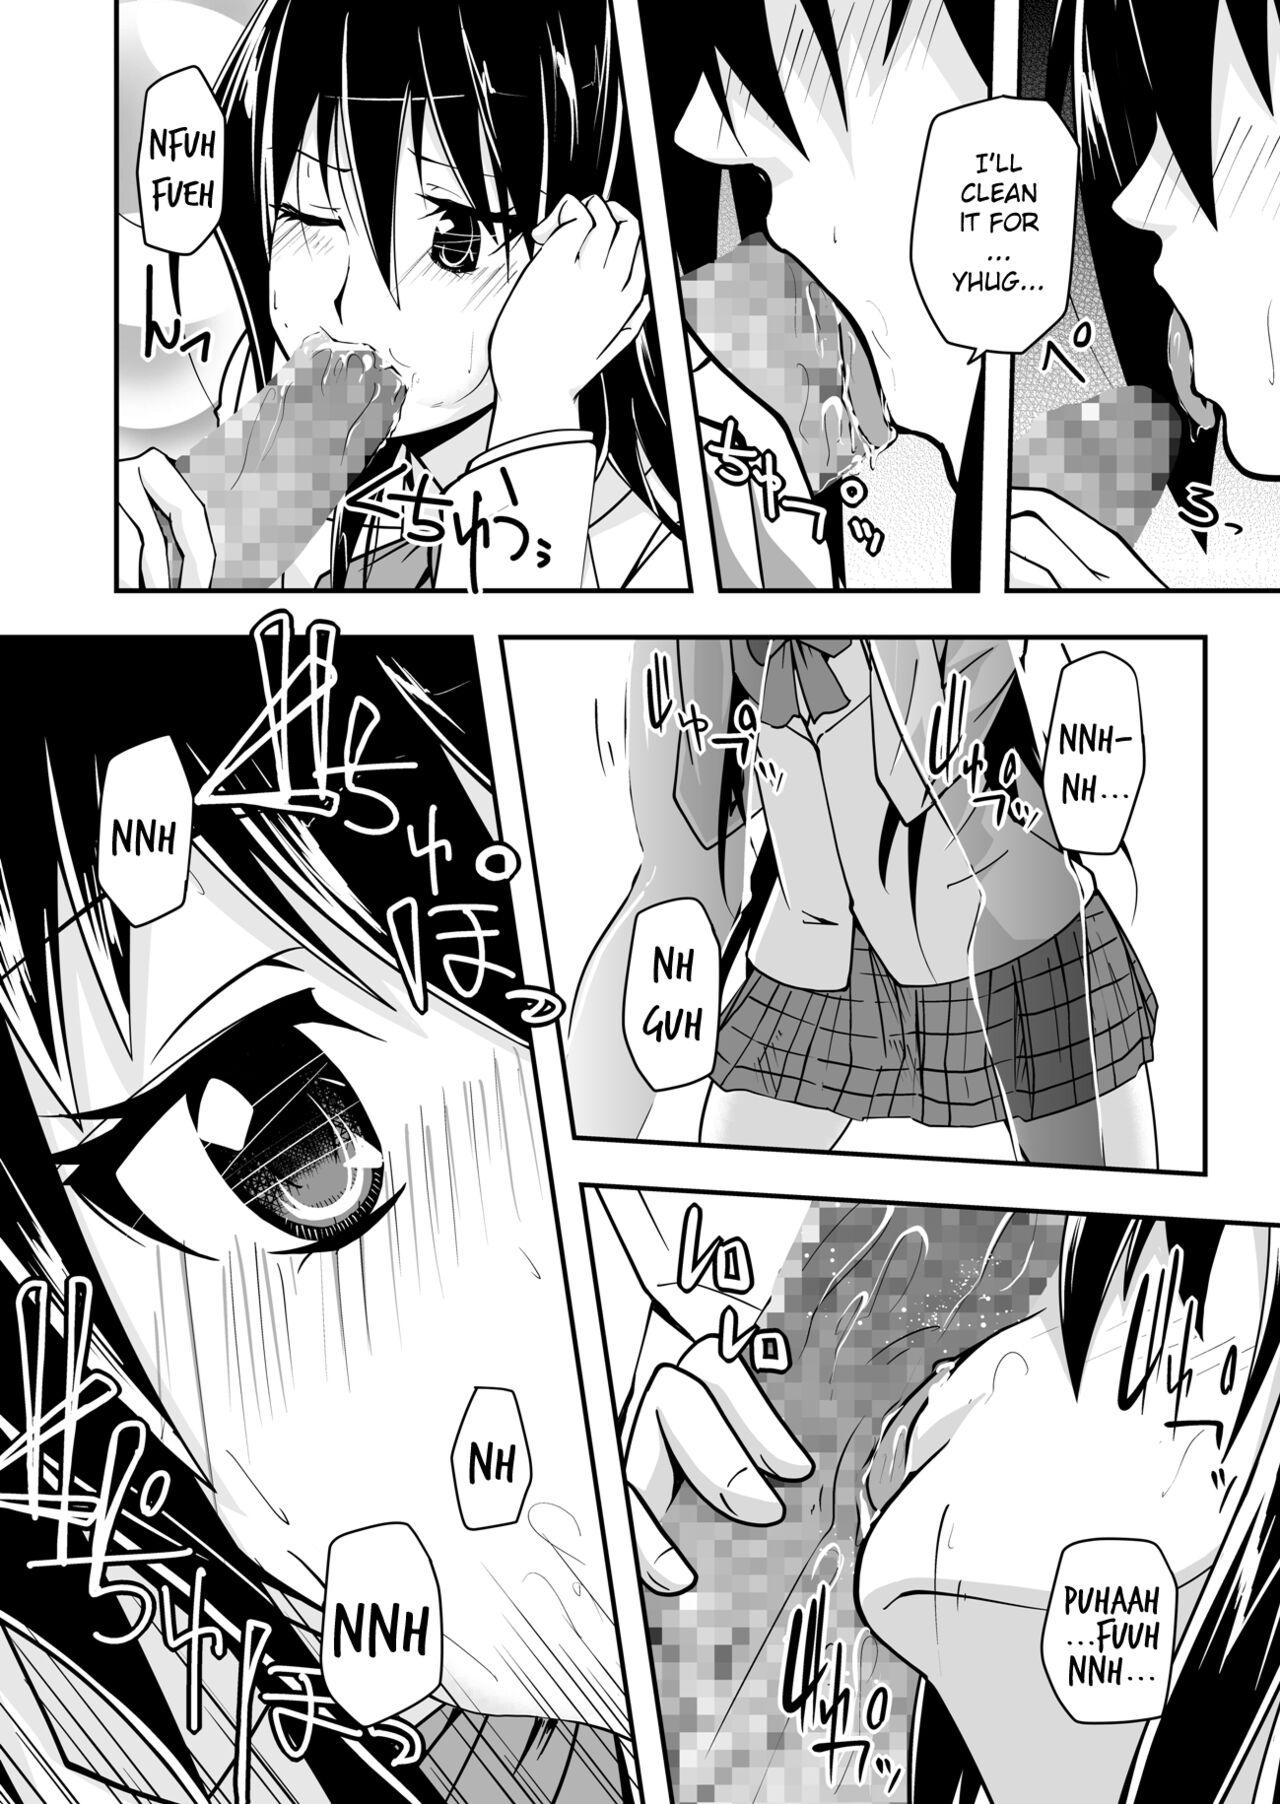 Natural Boobs *********! 1 - Seitokai yakuindomo Sucks - Page 10